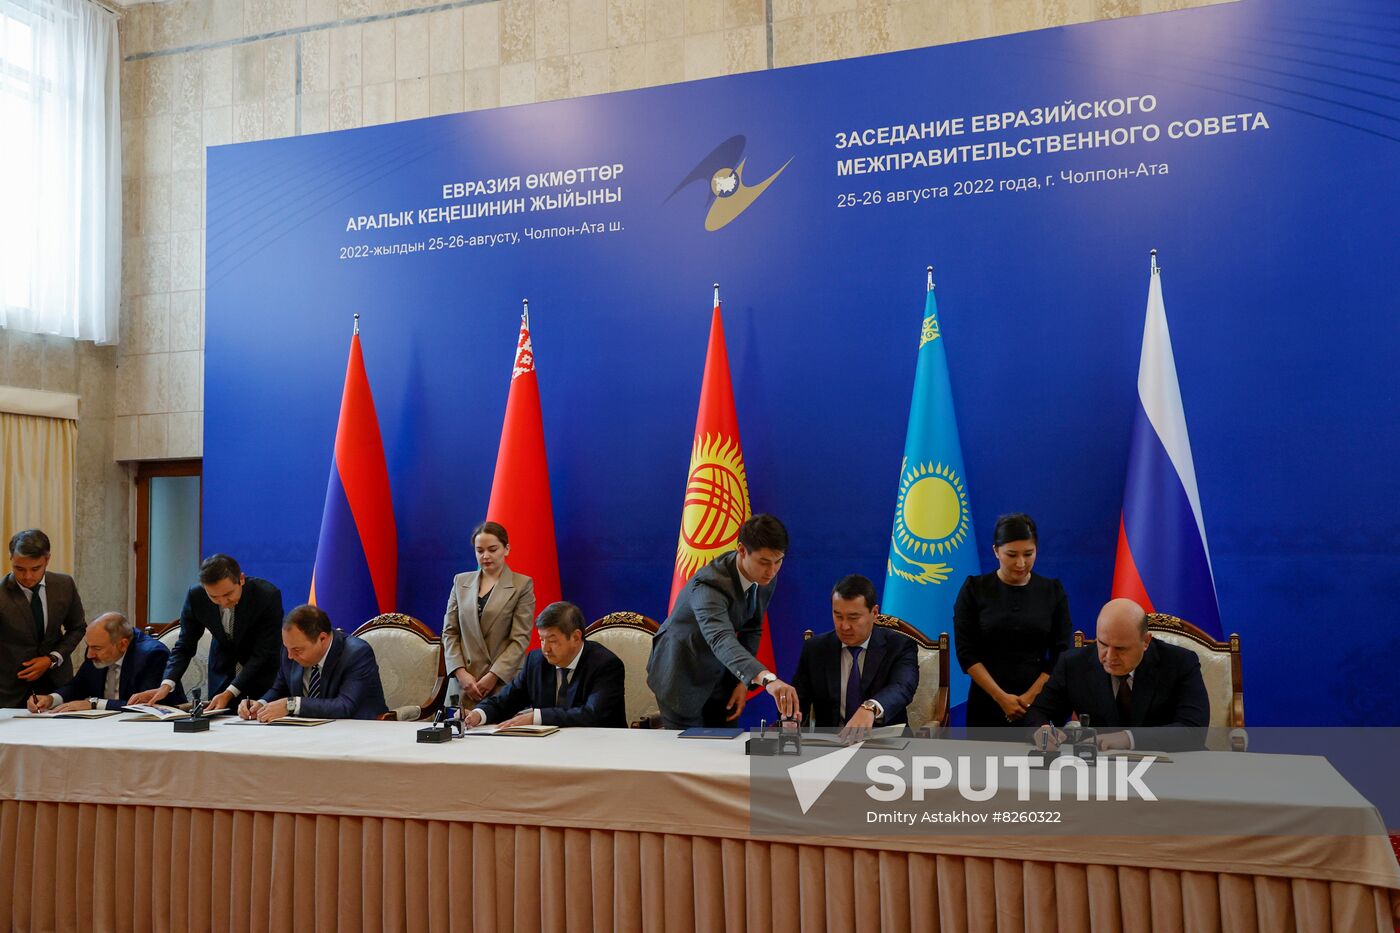 Kyrgyzstan EAEU Intergovernmental Council